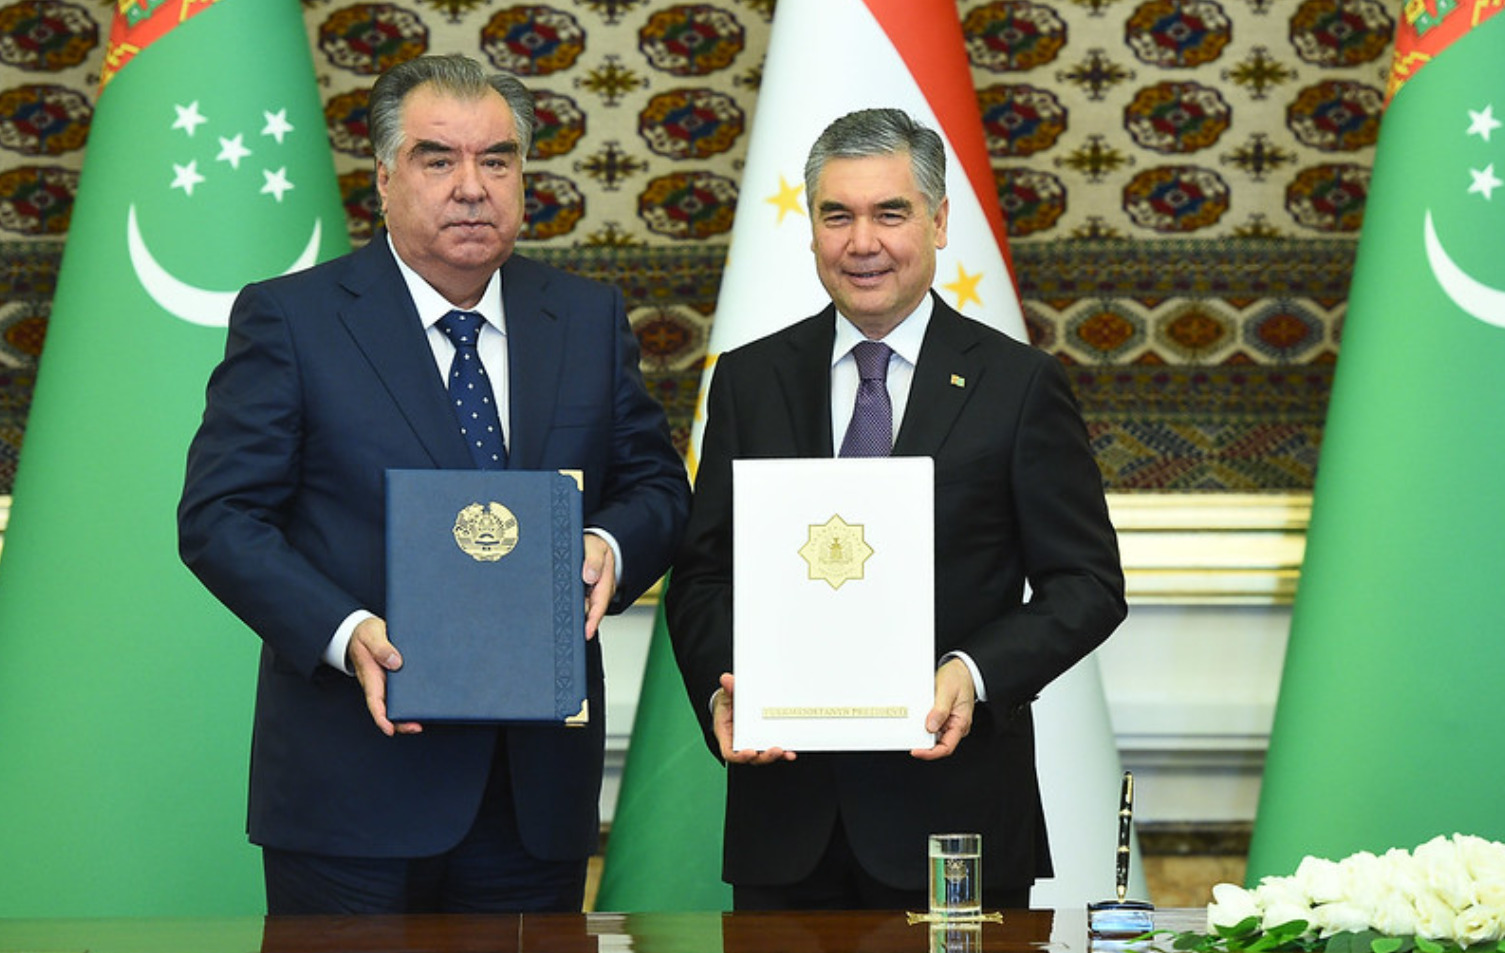 Заявление президента таджикистана. Гурбангулы Бердымухаммедов и Эмомали Рахмон.